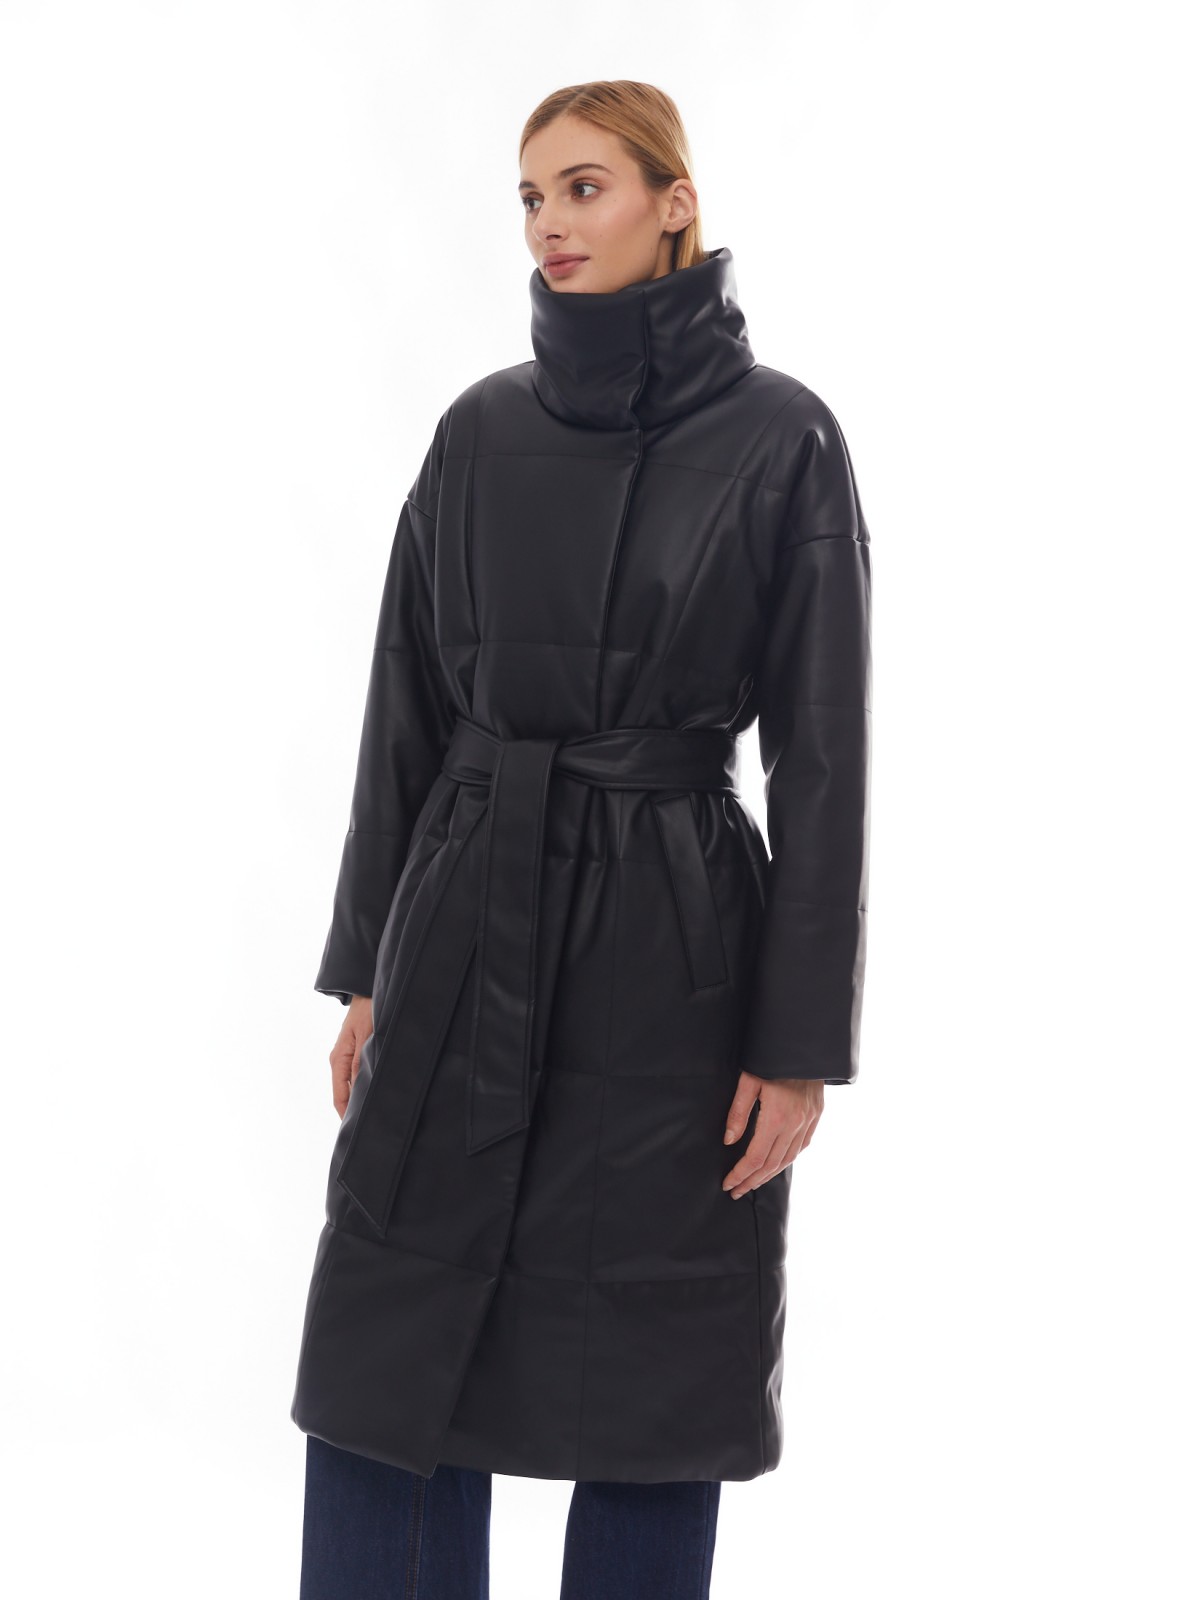 Тёплое пальто из экокожи на синтепоне с воротником-стойкой и поясом zolla 02412522N034, цвет черный, размер XS - фото 3